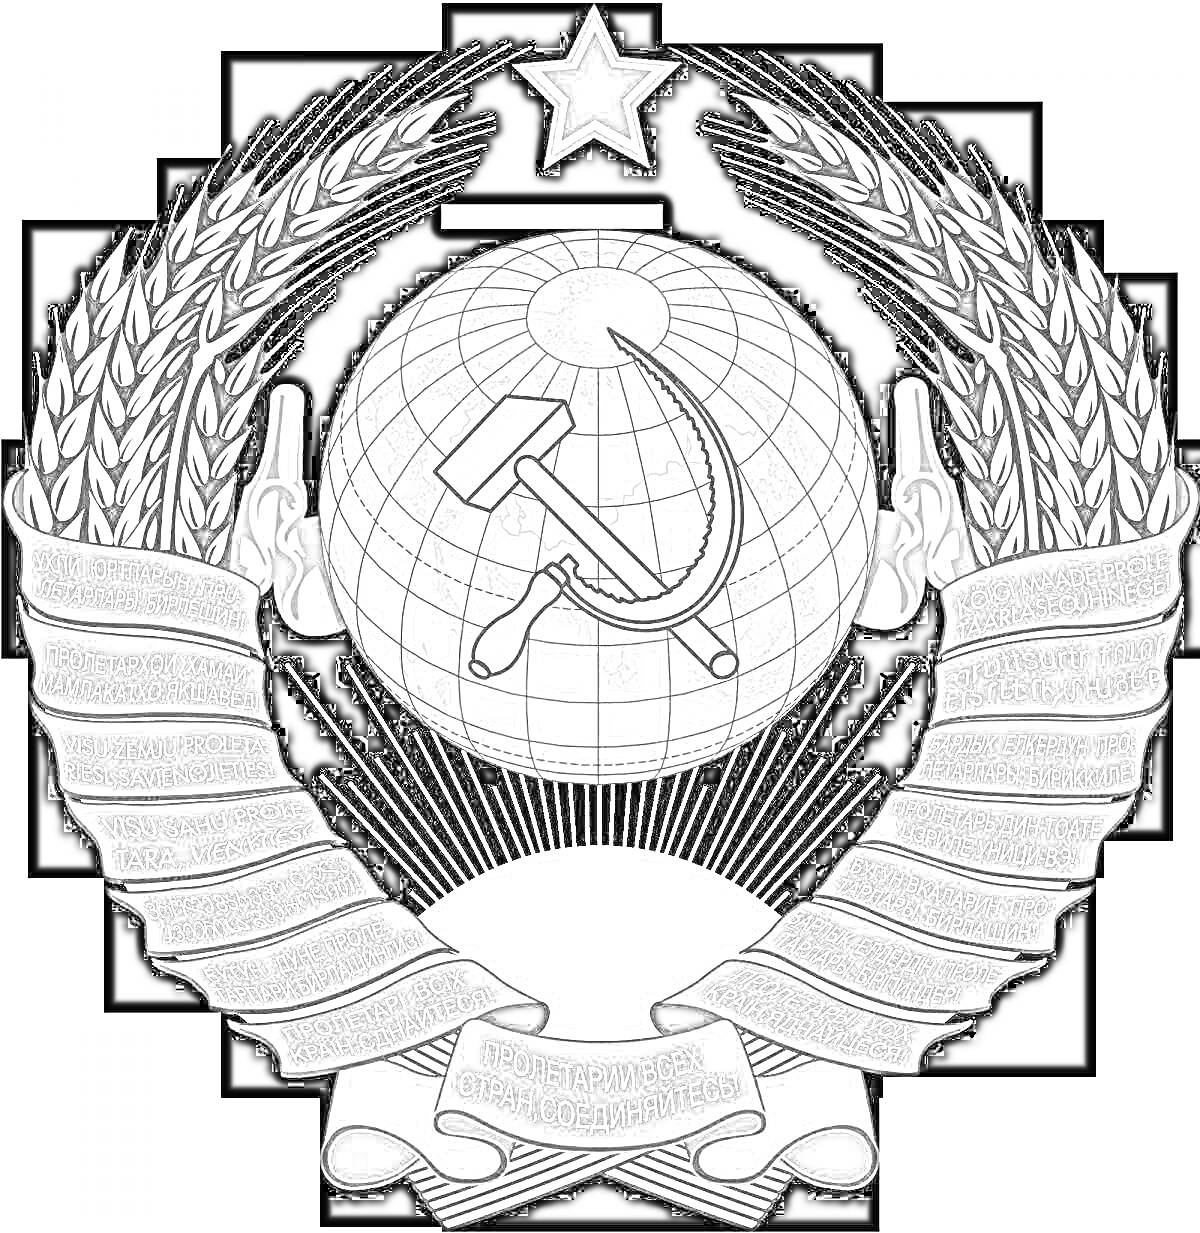 Раскраска Герб Советского Союза с центральной композицией, состоящей из серпа и молота на фоне земного шара, окруженного снопами пшеницы, перевязанными лентами с надписями на различных языках. Наверху расположена звезда.